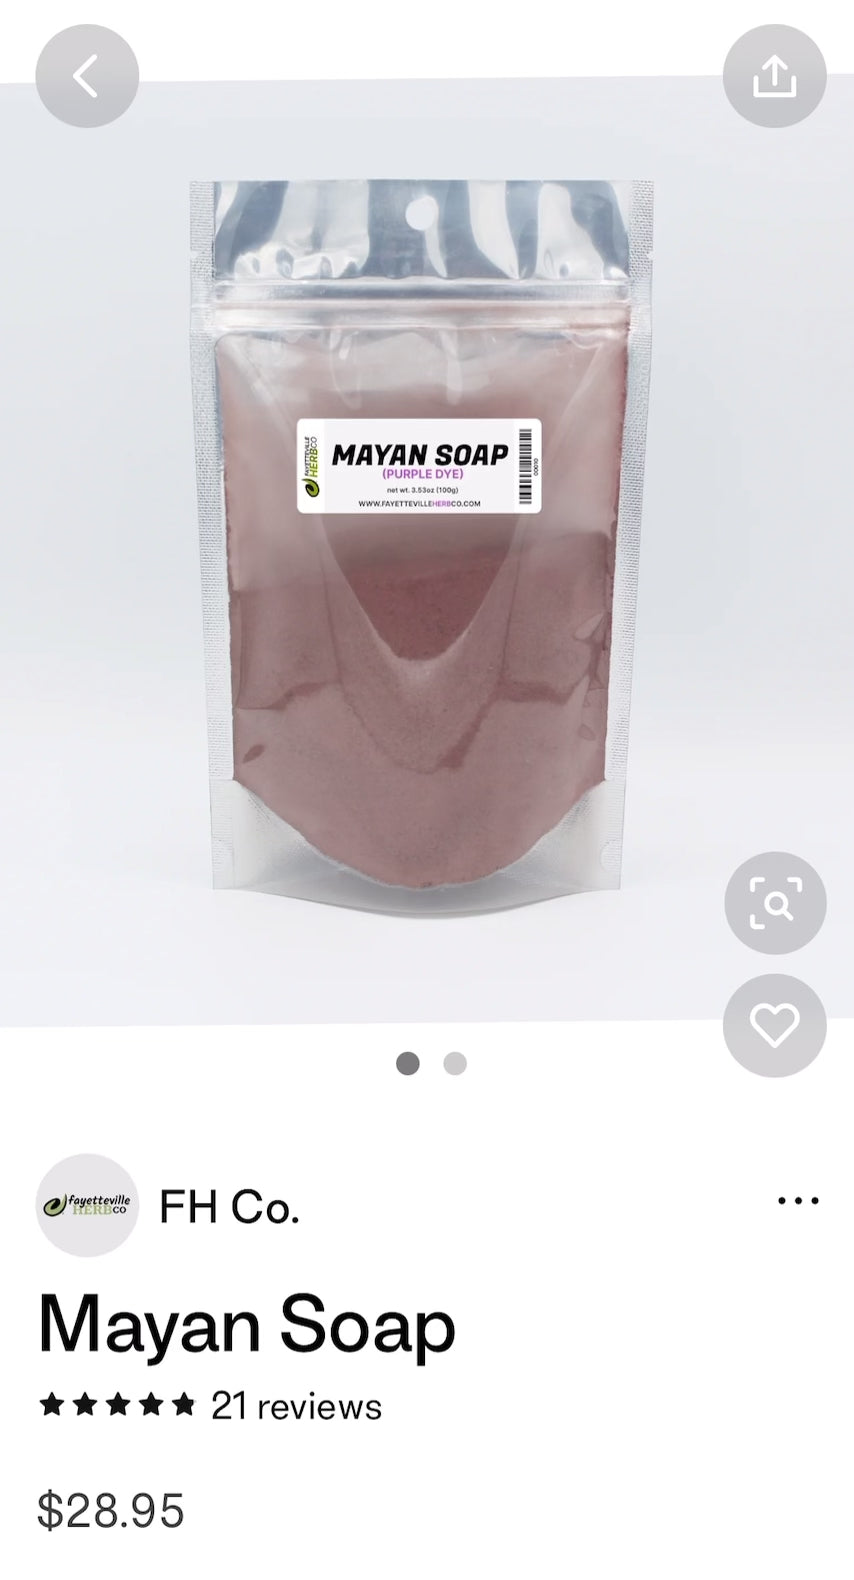 Mayan Soap